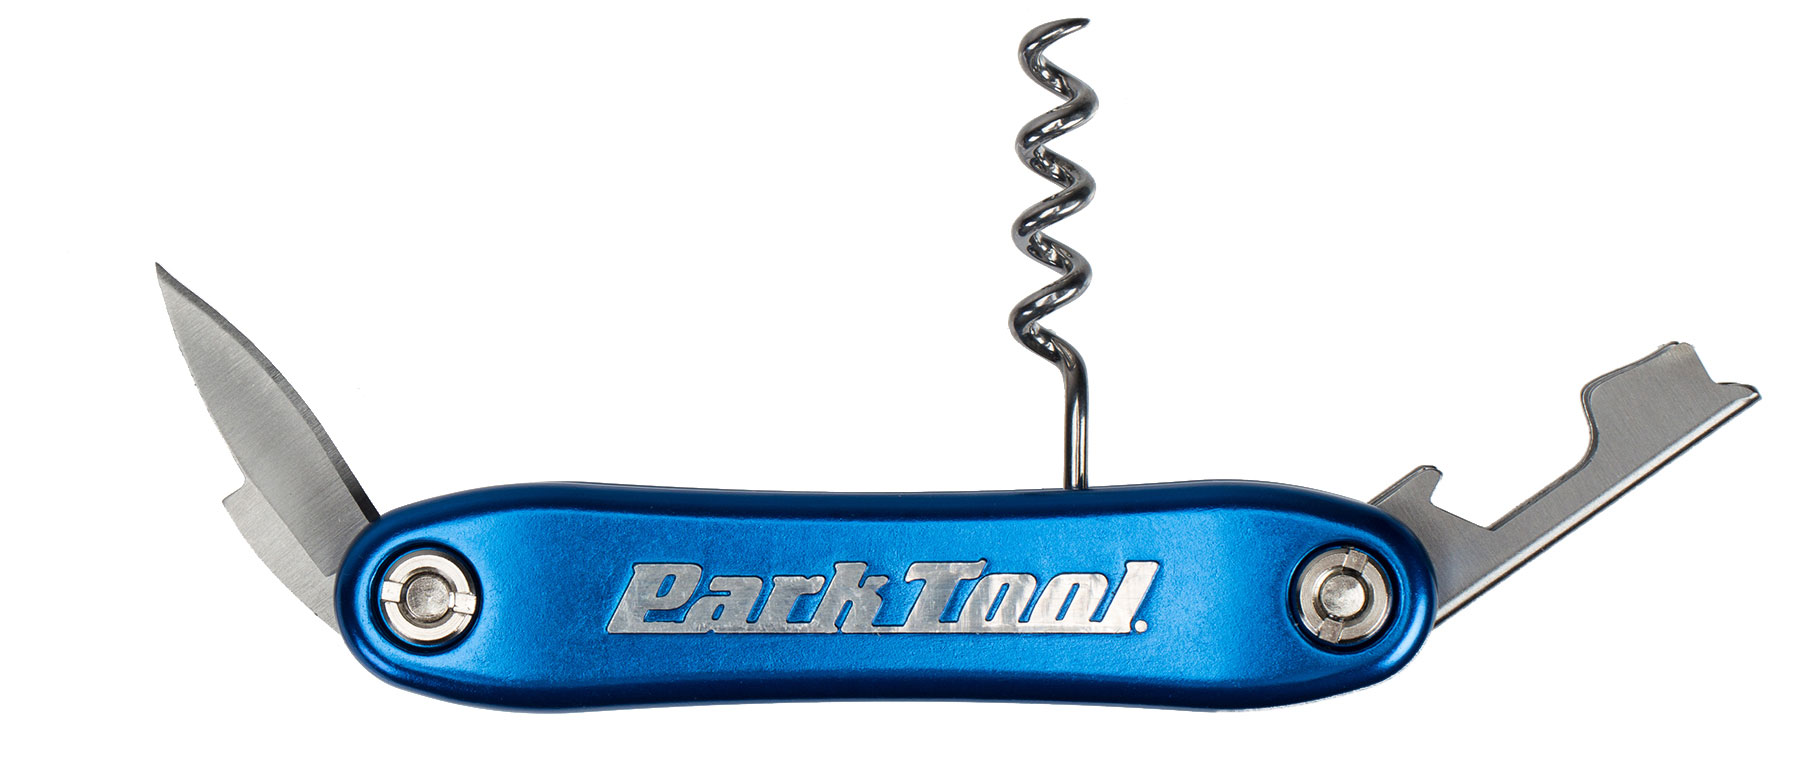 Park Tool BO-4 Corkscrew and Bottle Opener Tool